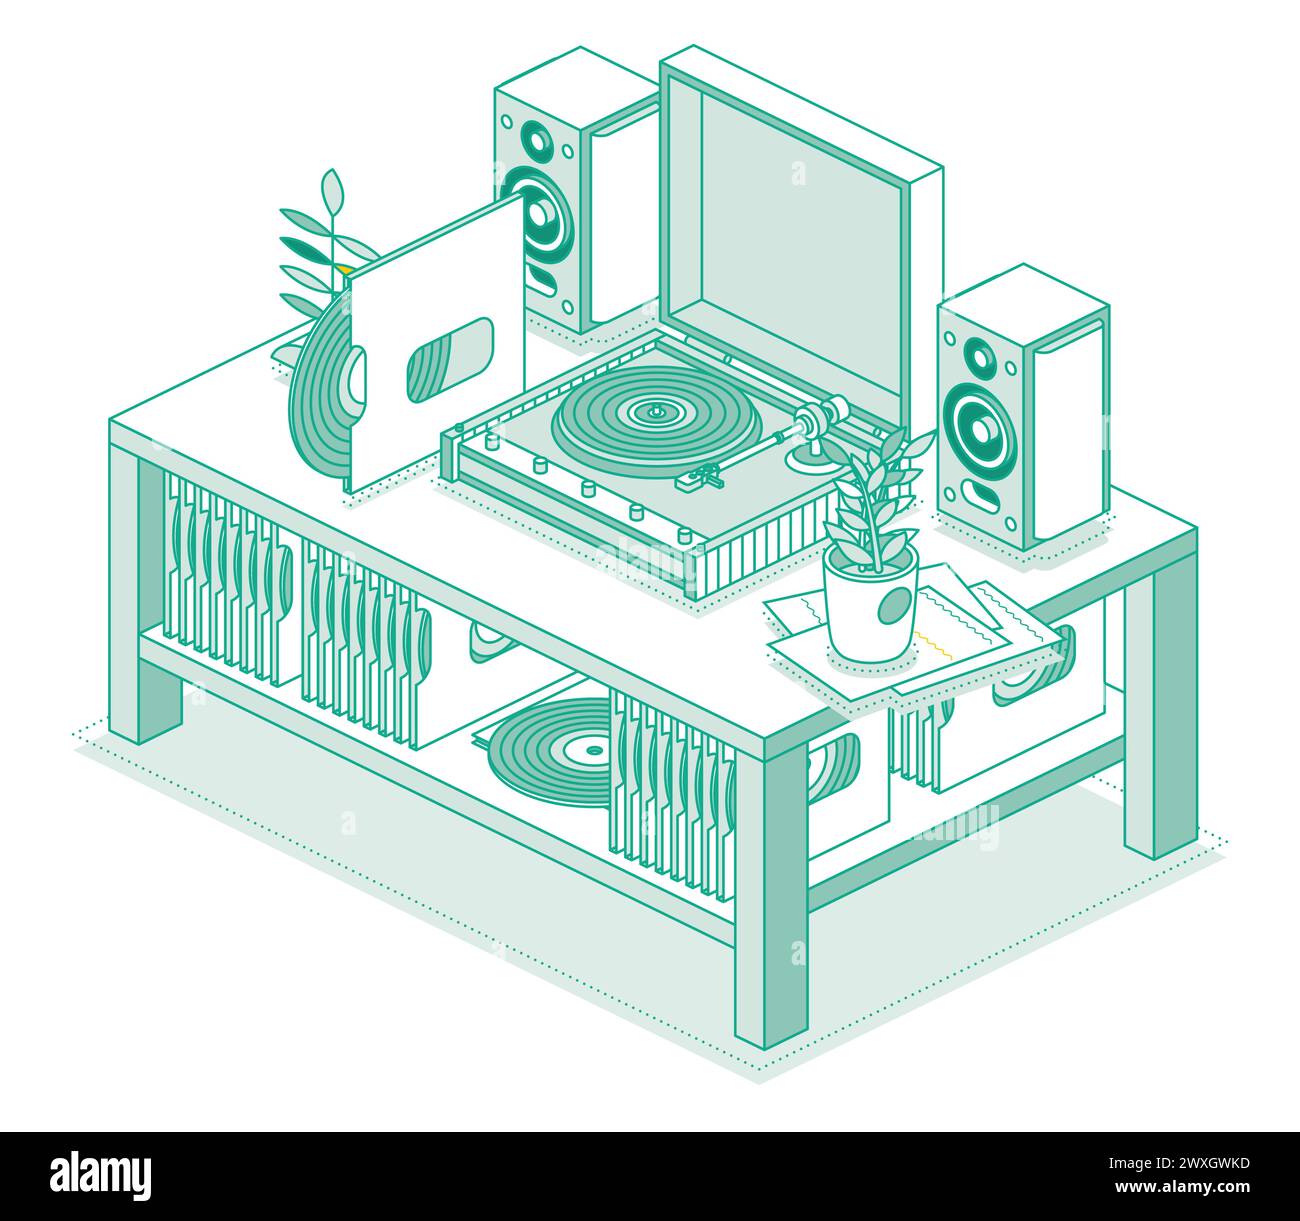 Tourne-disque vinyle LP isométrique avec disque. Table avec enregistreur et deux haut-parleurs. Système stéréo. Objets isolés sur fond blanc. Illustration de Vecteur